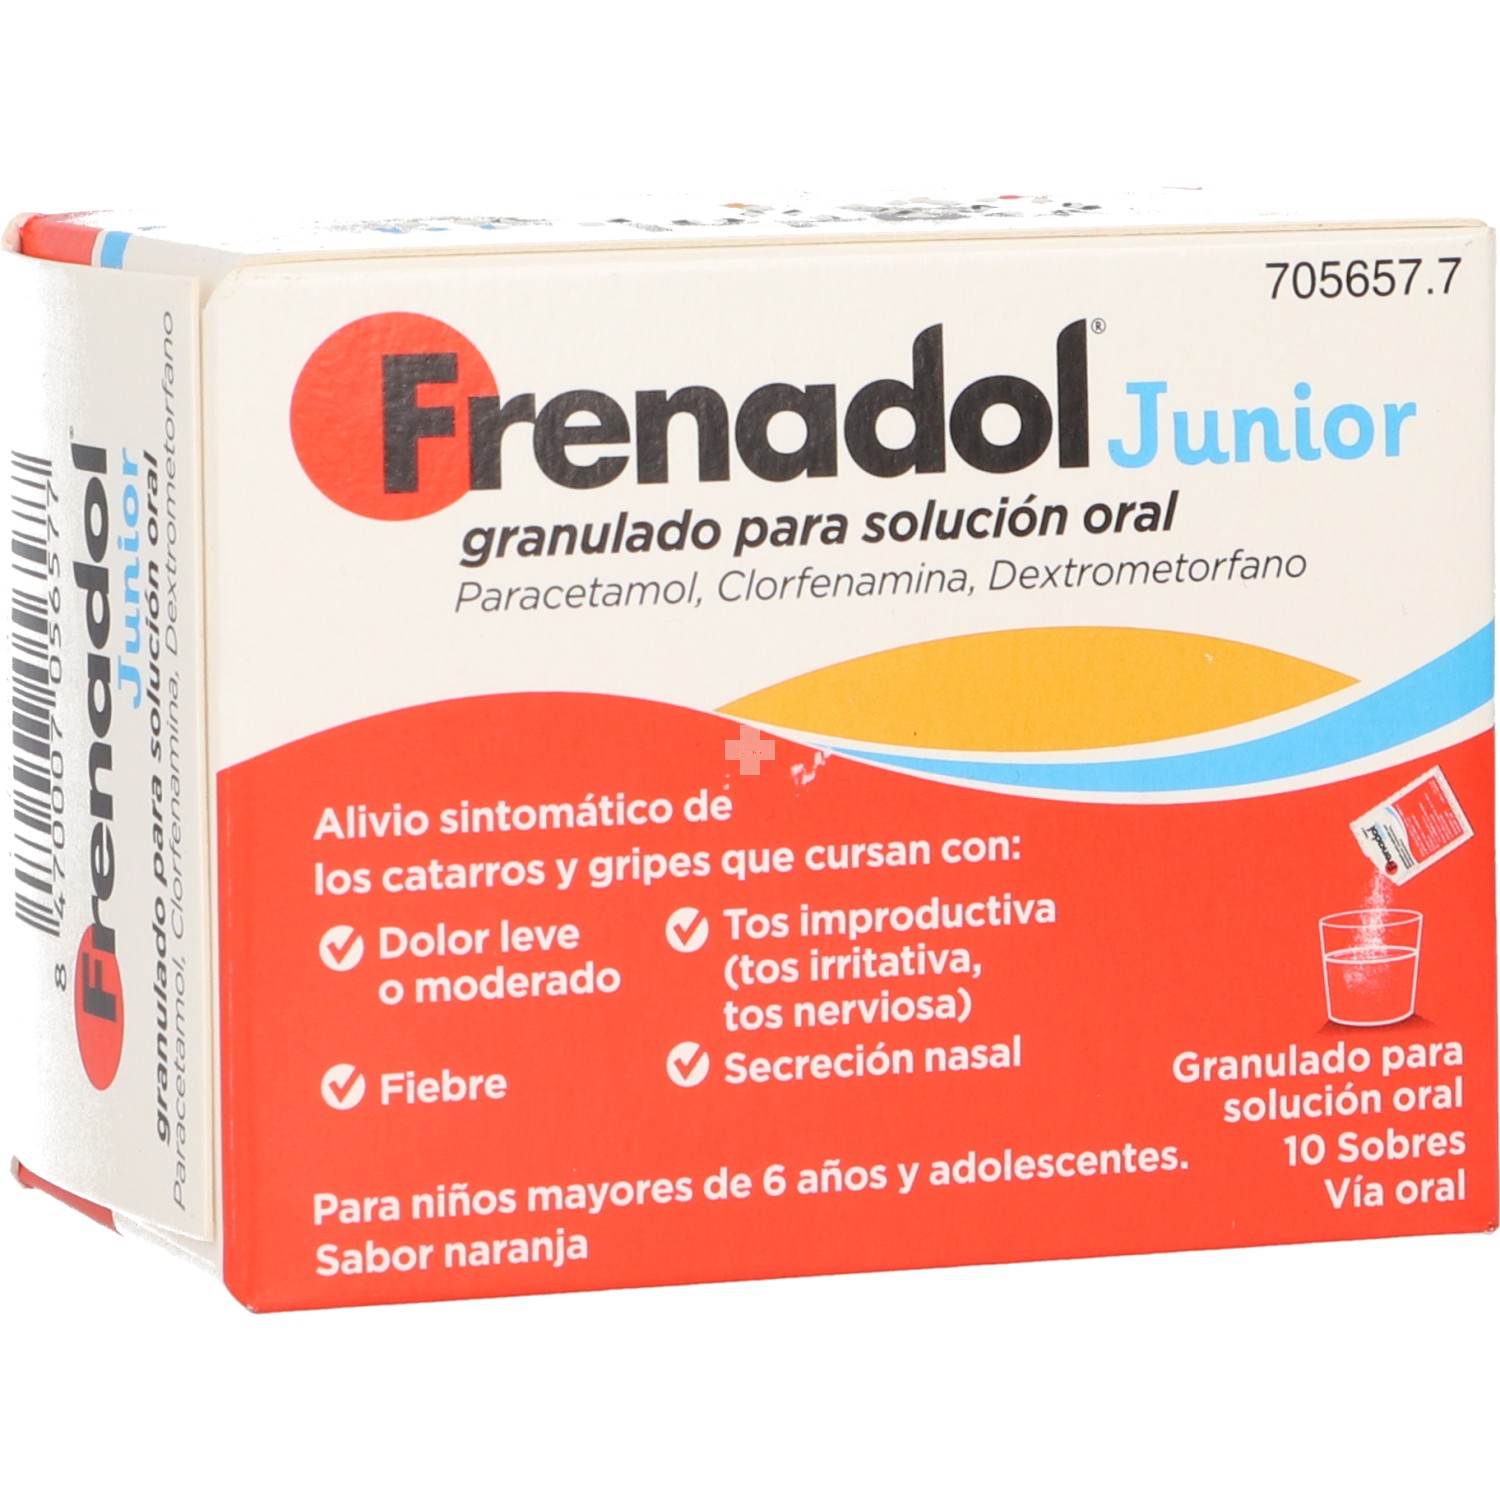 Frenadol Junior Granulado para Solución Oral - 10 Sobres